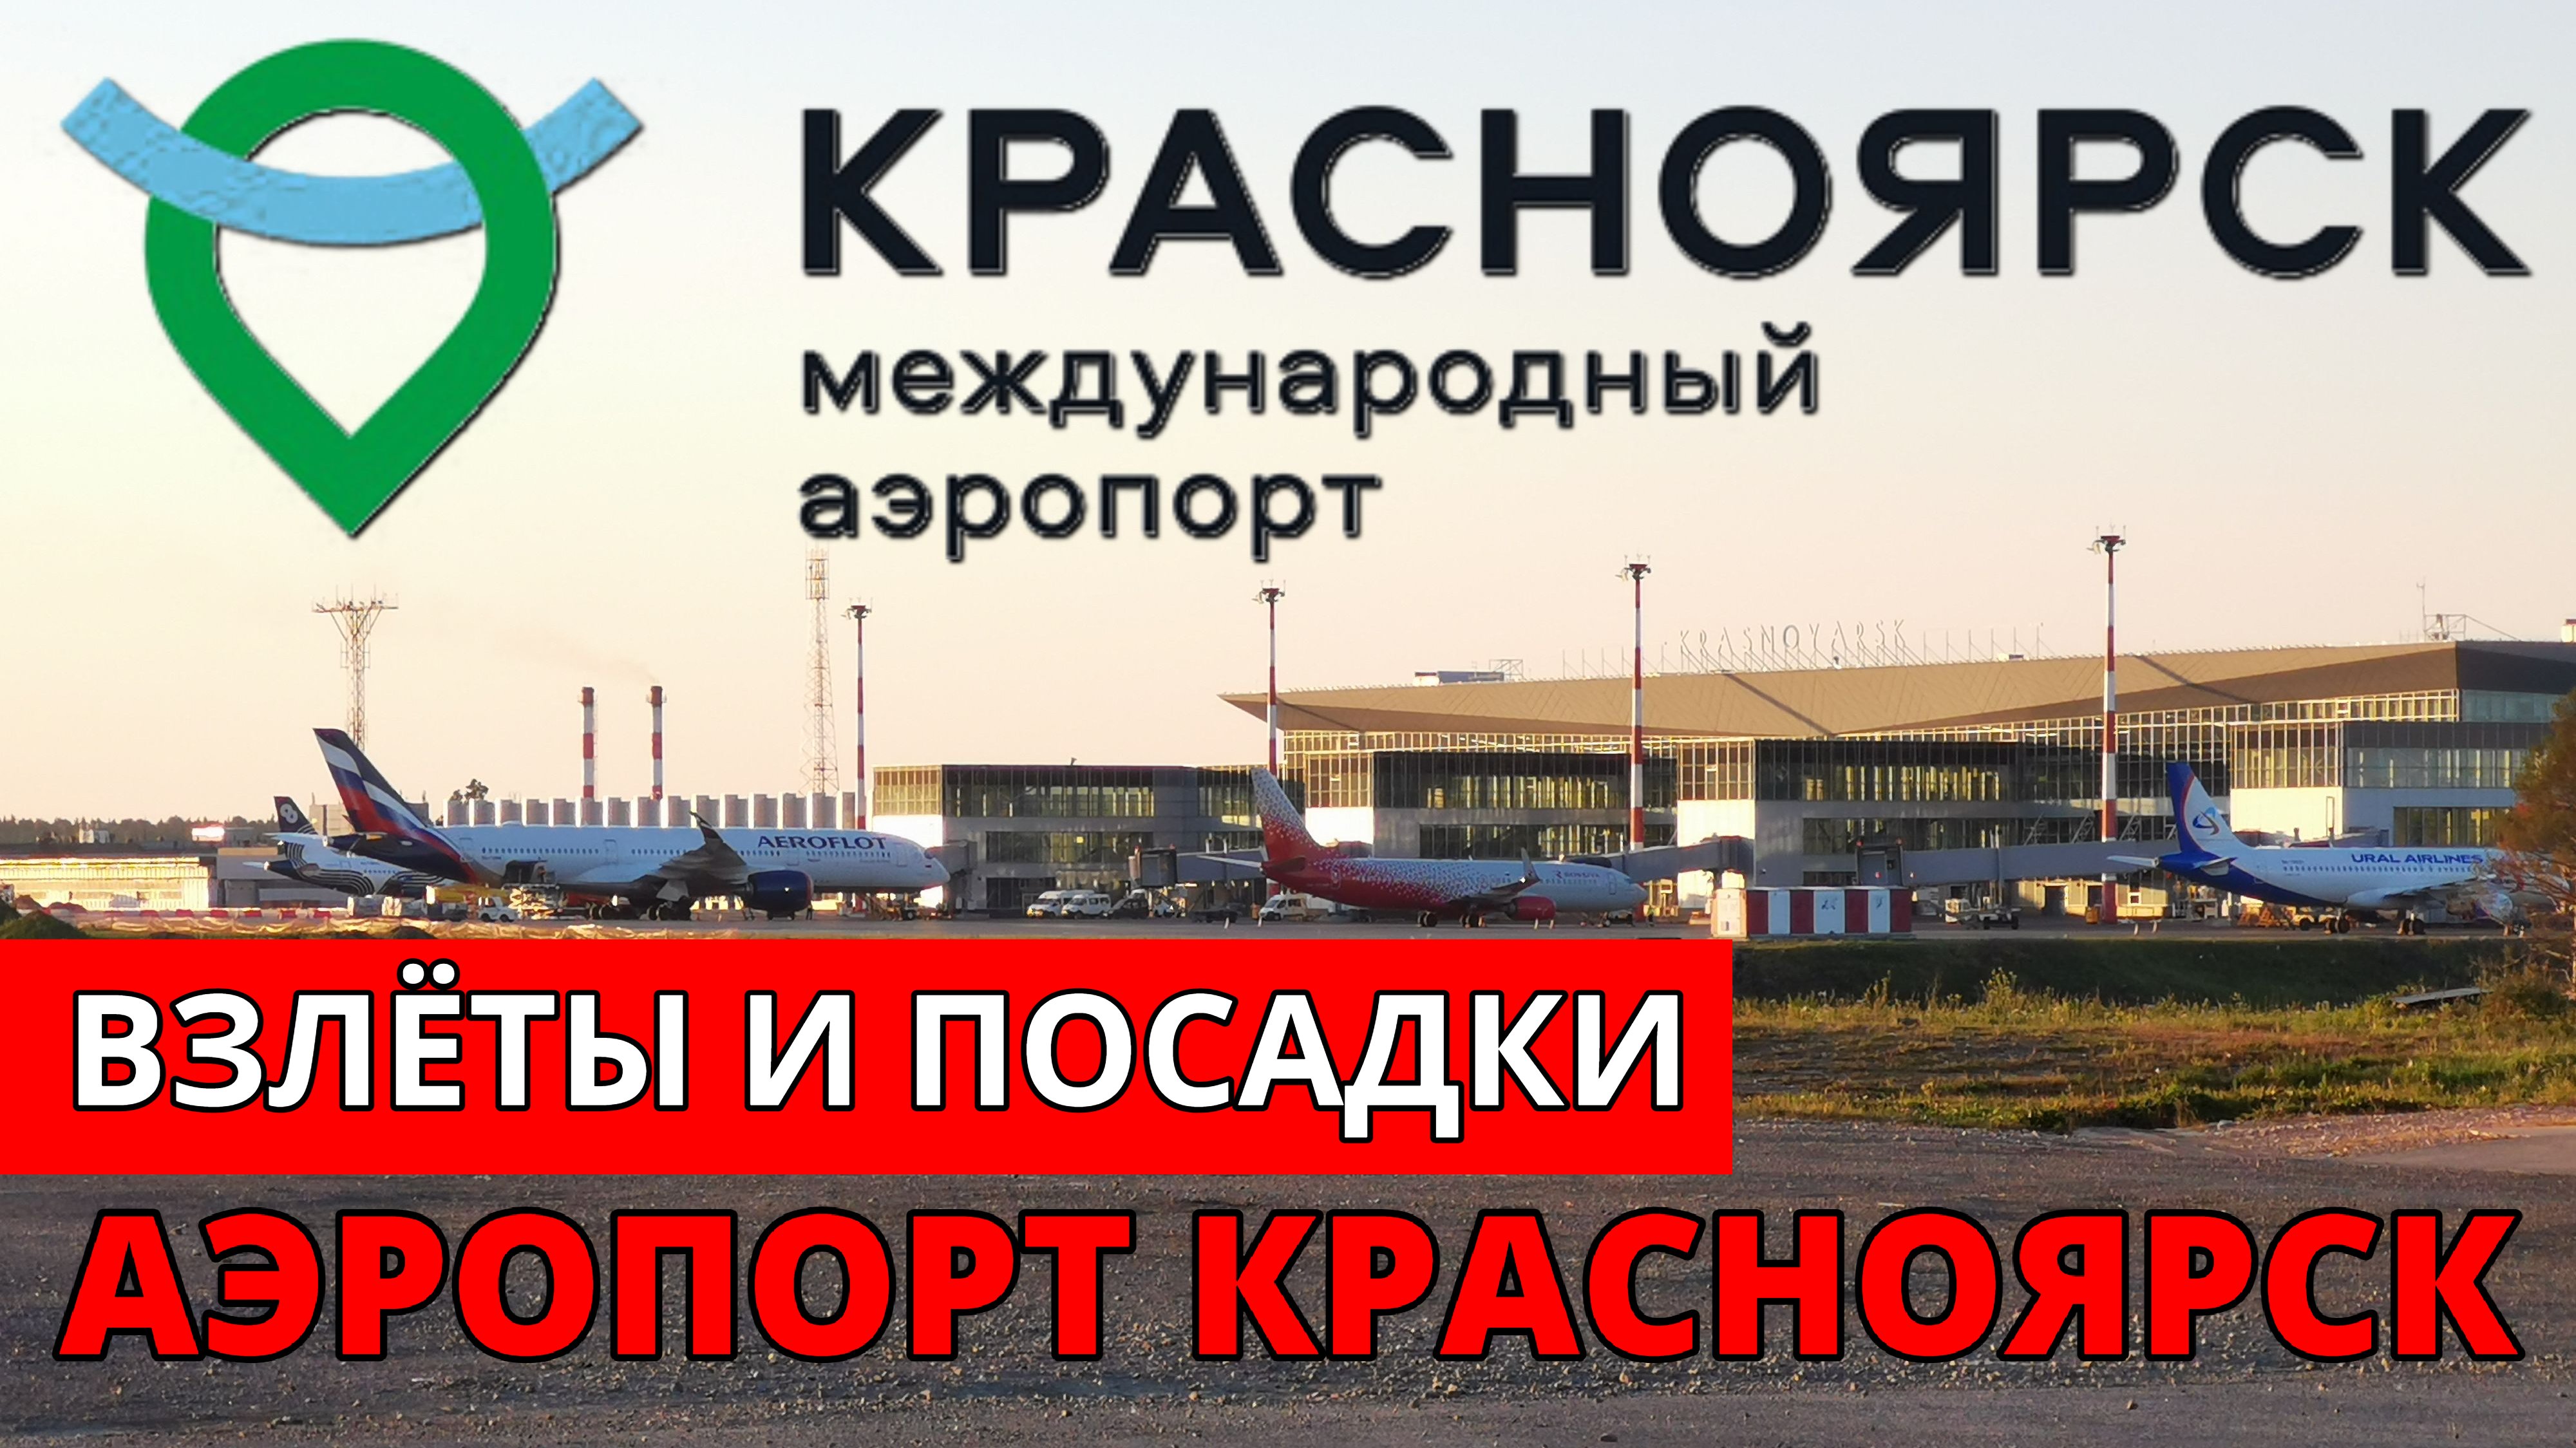 Аэропорт Красноярск. Авиакомпания Россия, Авиакомпания Аврора, S7, Уральские авиалинии